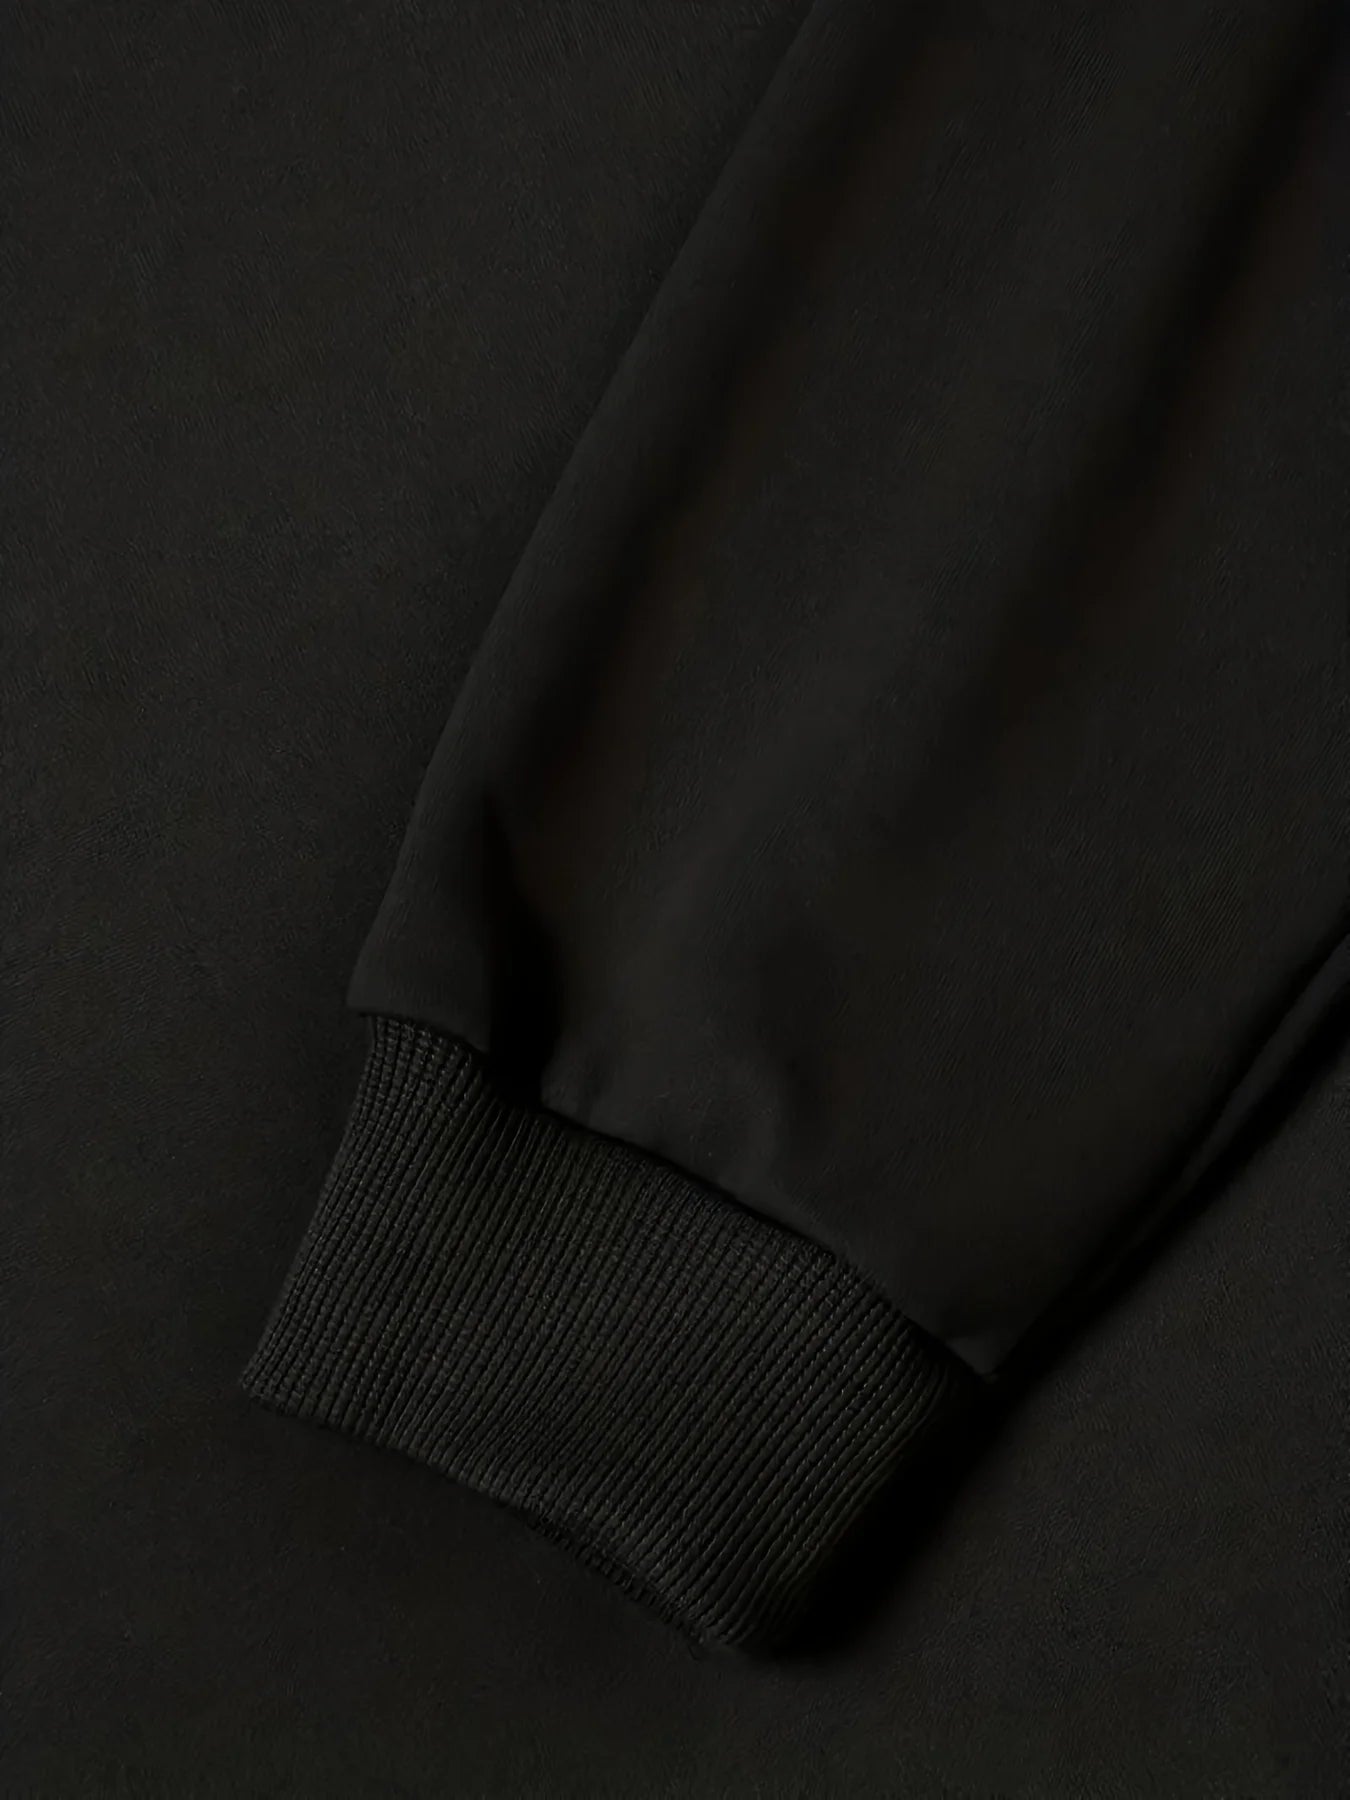 Dark Black Terror Print Fashion Round Neck Sweater Hoodie Autumn/Winter Warm Sweatshirt Black